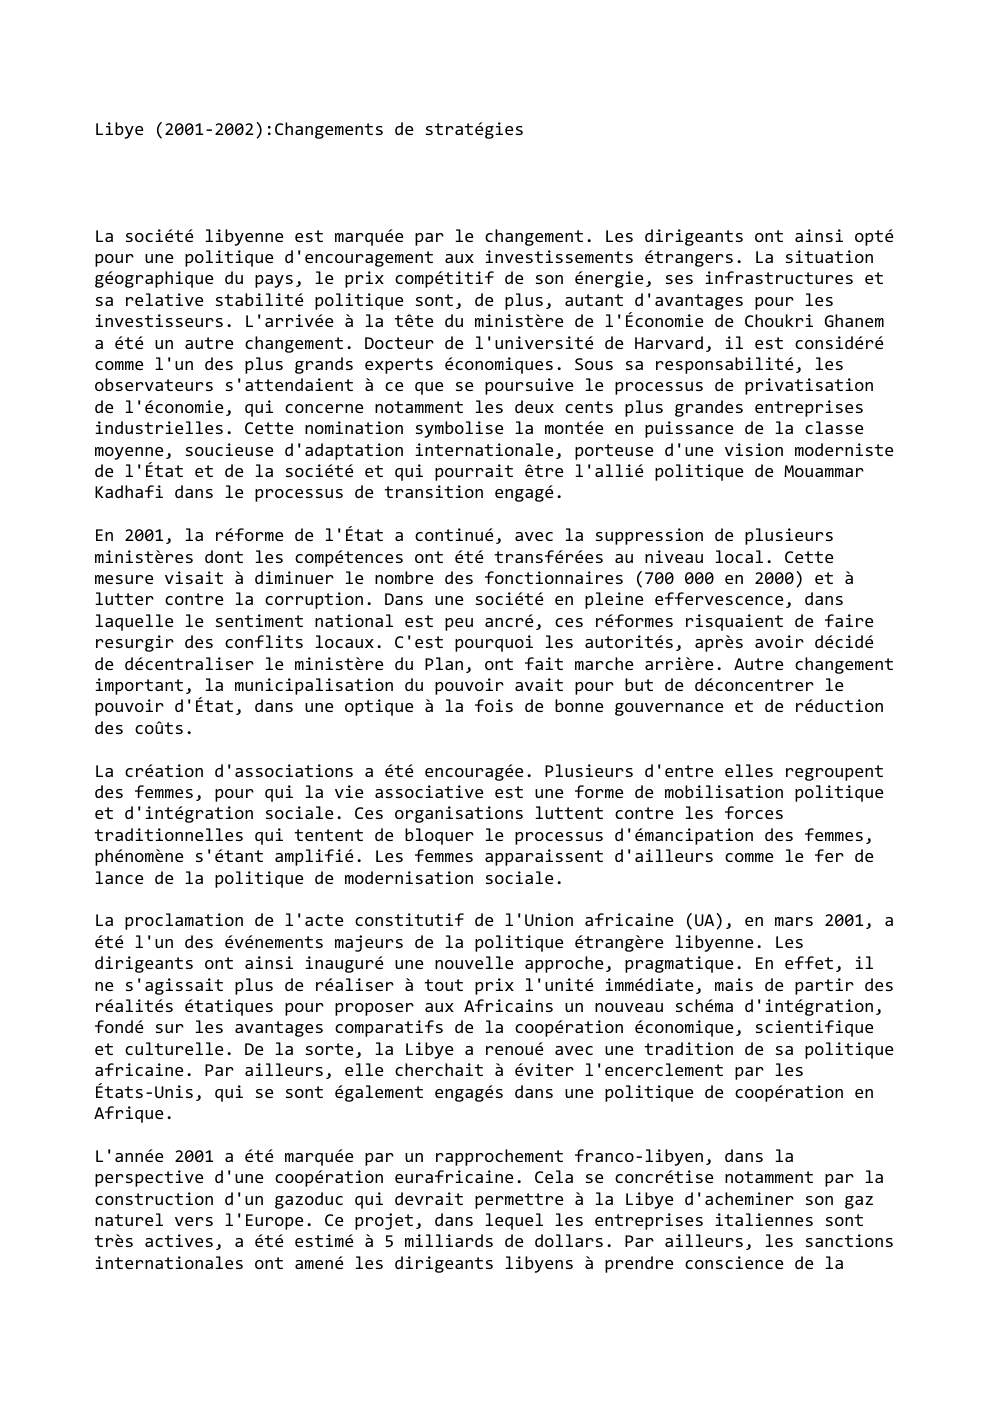 Prévisualisation du document Libye (2001-2002):Changements de stratégies

La société libyenne est marquée par le changement. Les dirigeants ont ainsi opté
pour une politique...